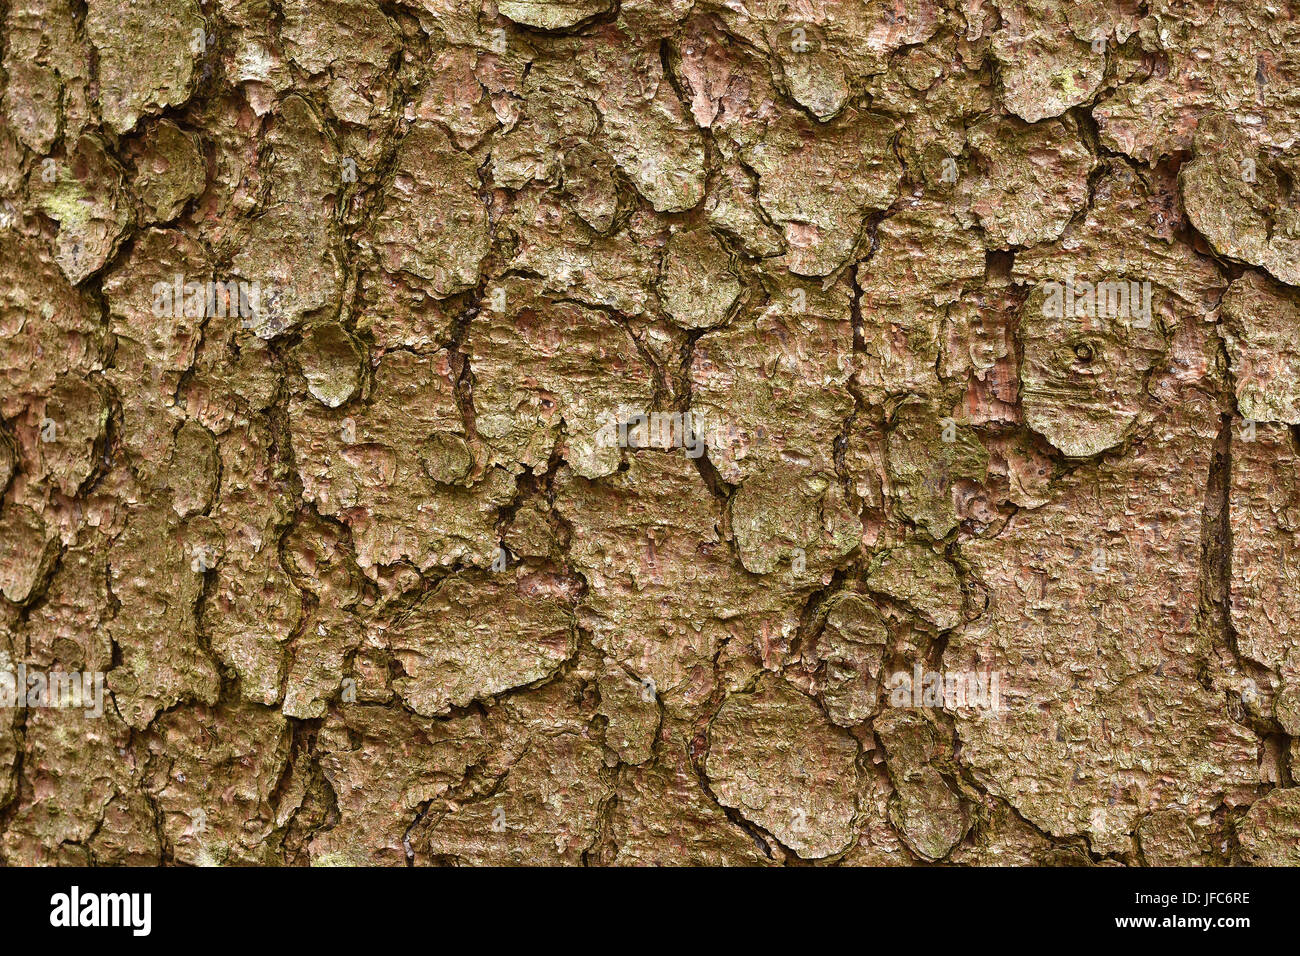 bark, tree bark, spruce, Stock Photo